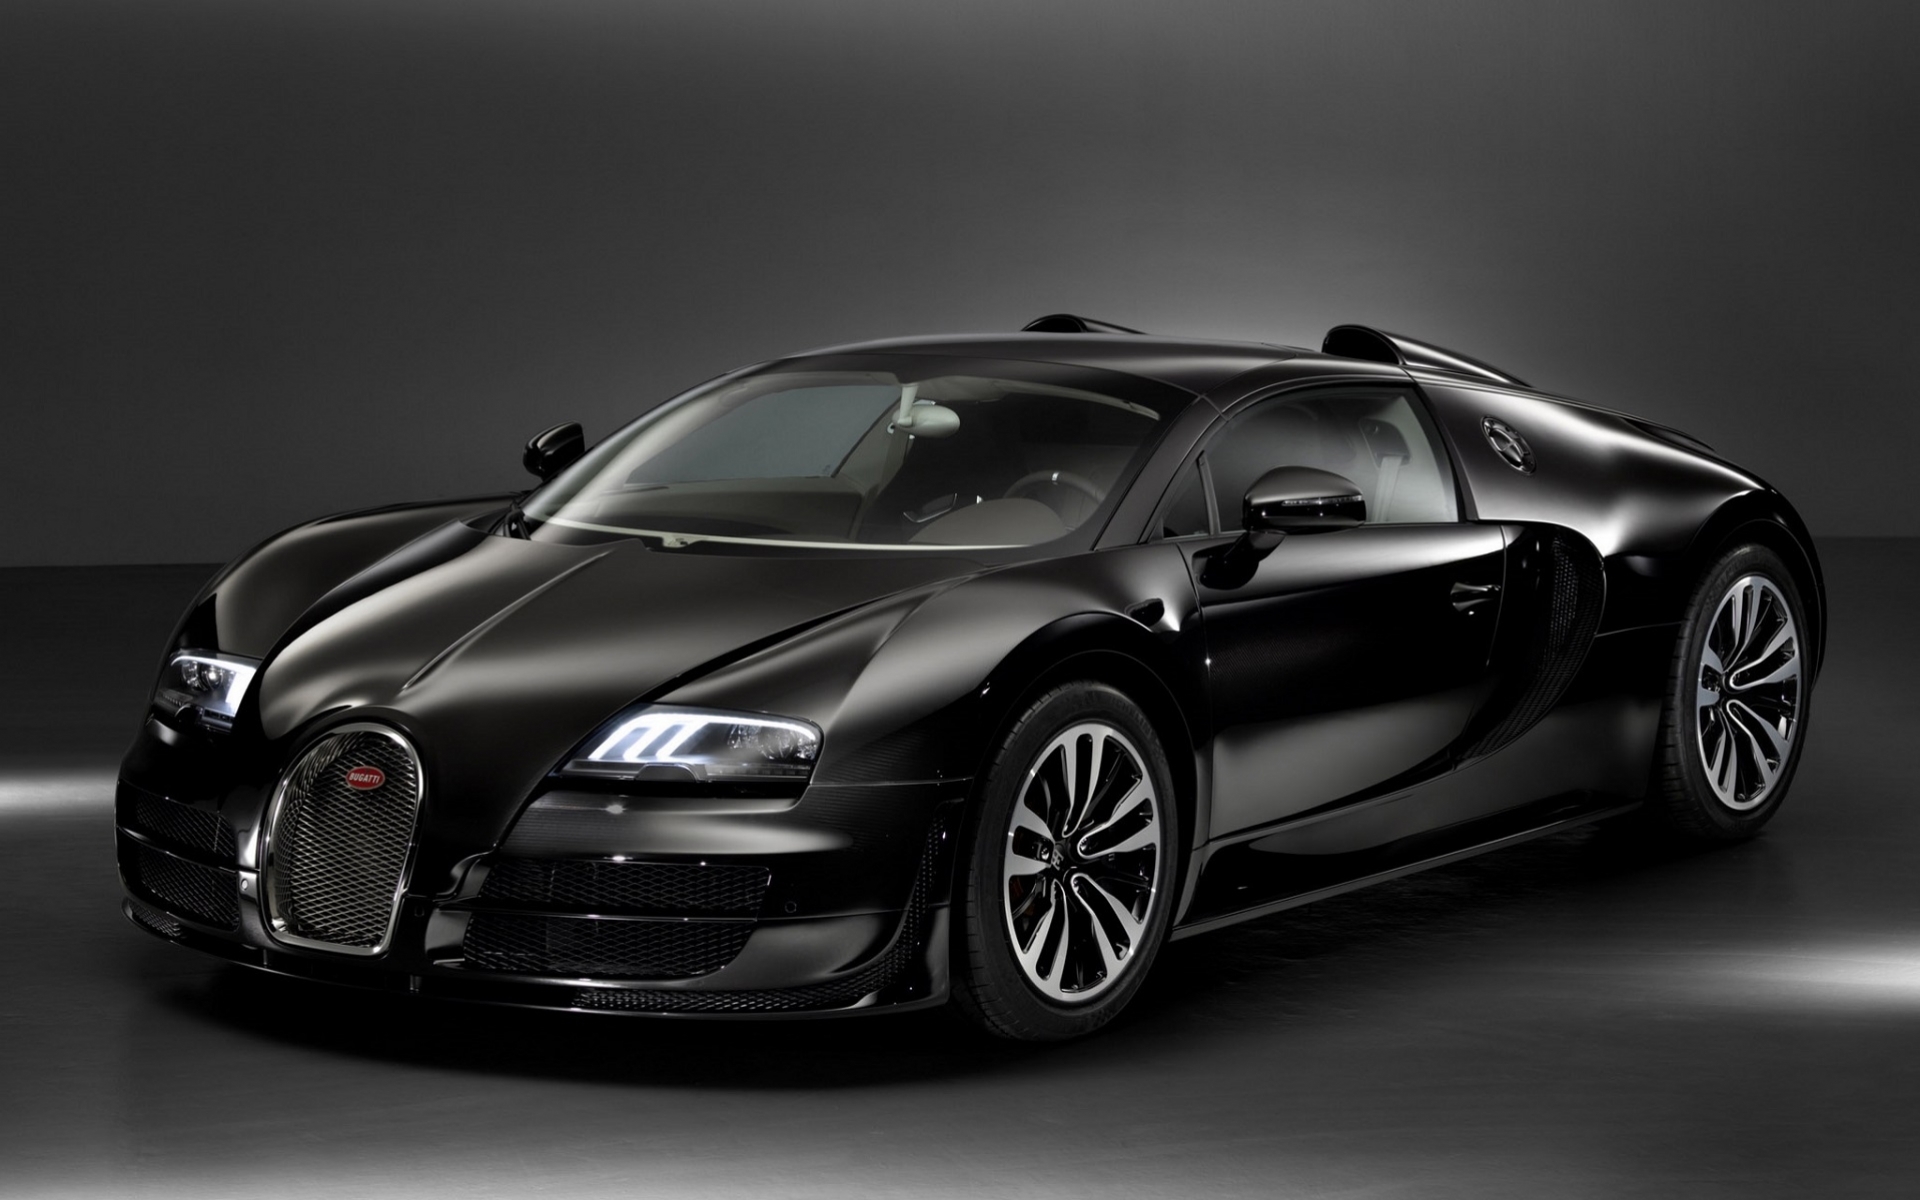 Télécharger des fonds d'écran Bugatti HD